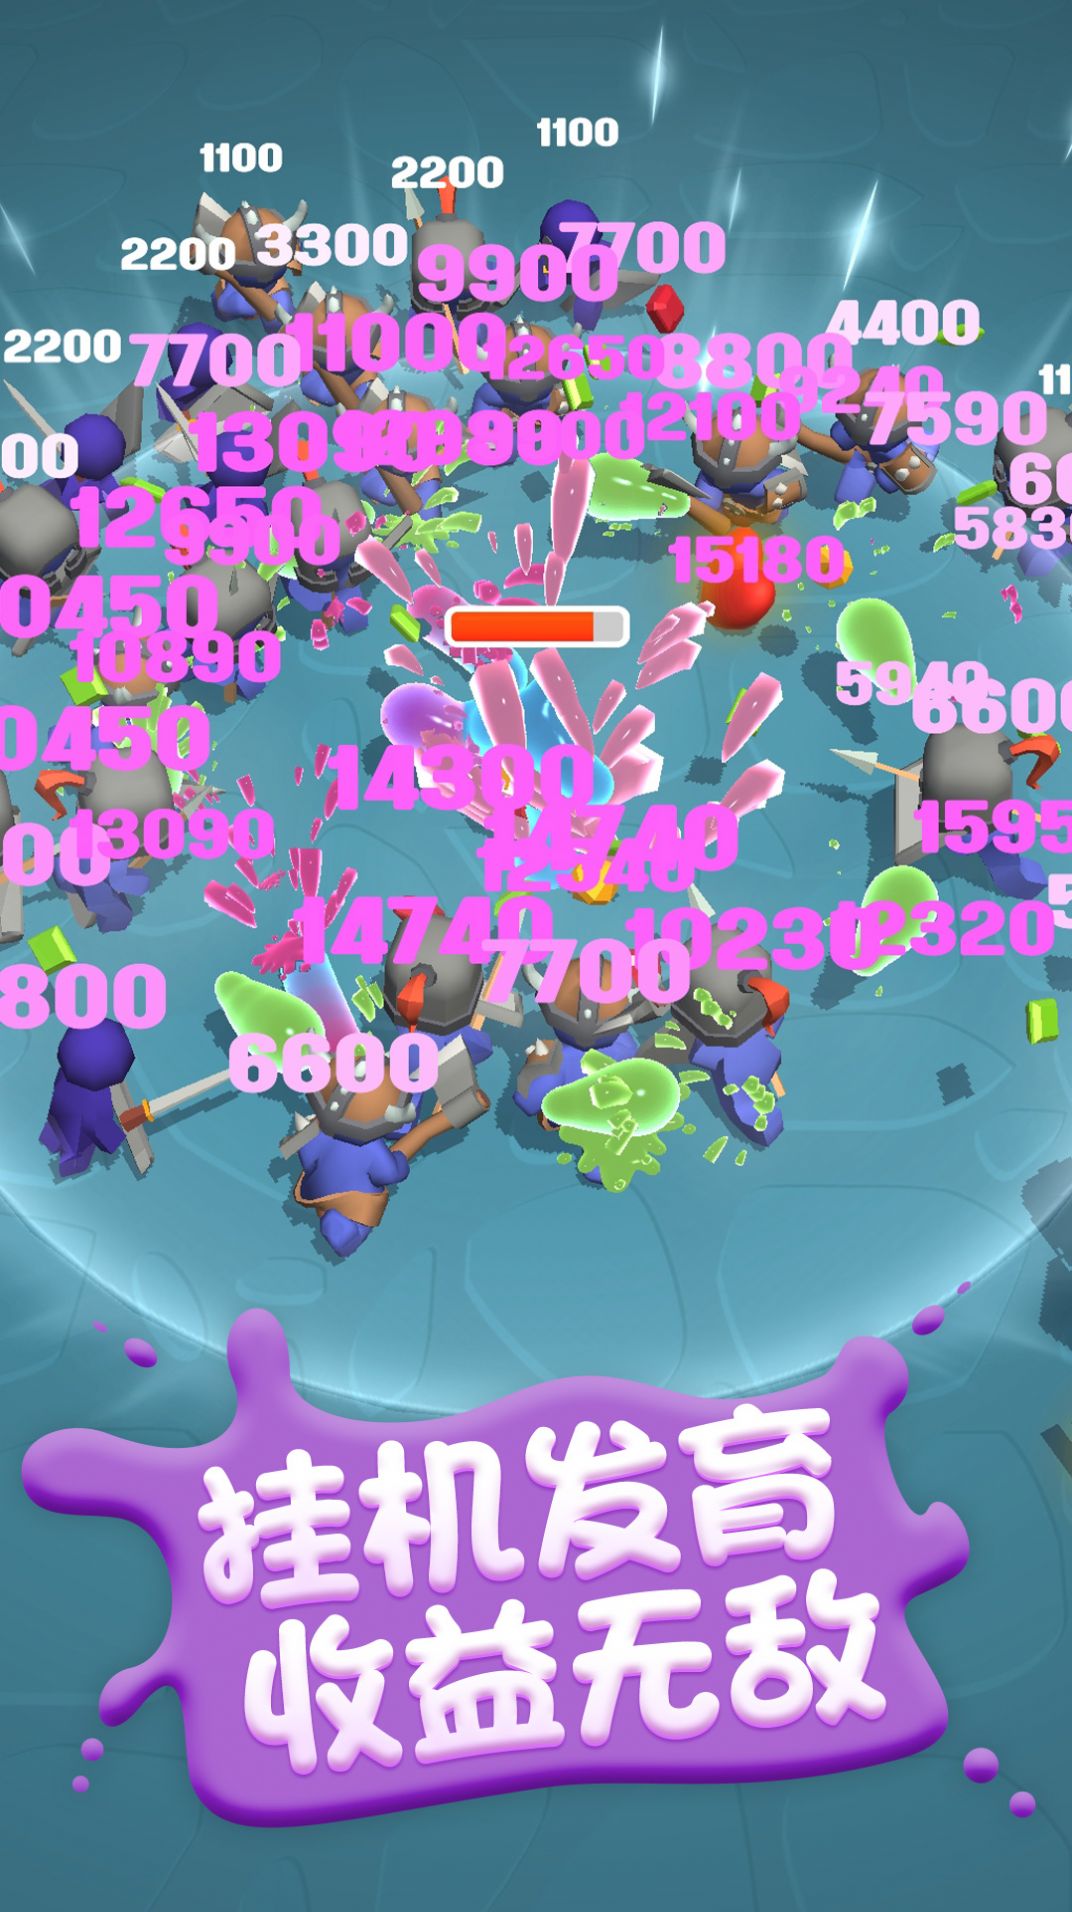 糖豆人挑战赛单机版游戏官方安卓版截图2: